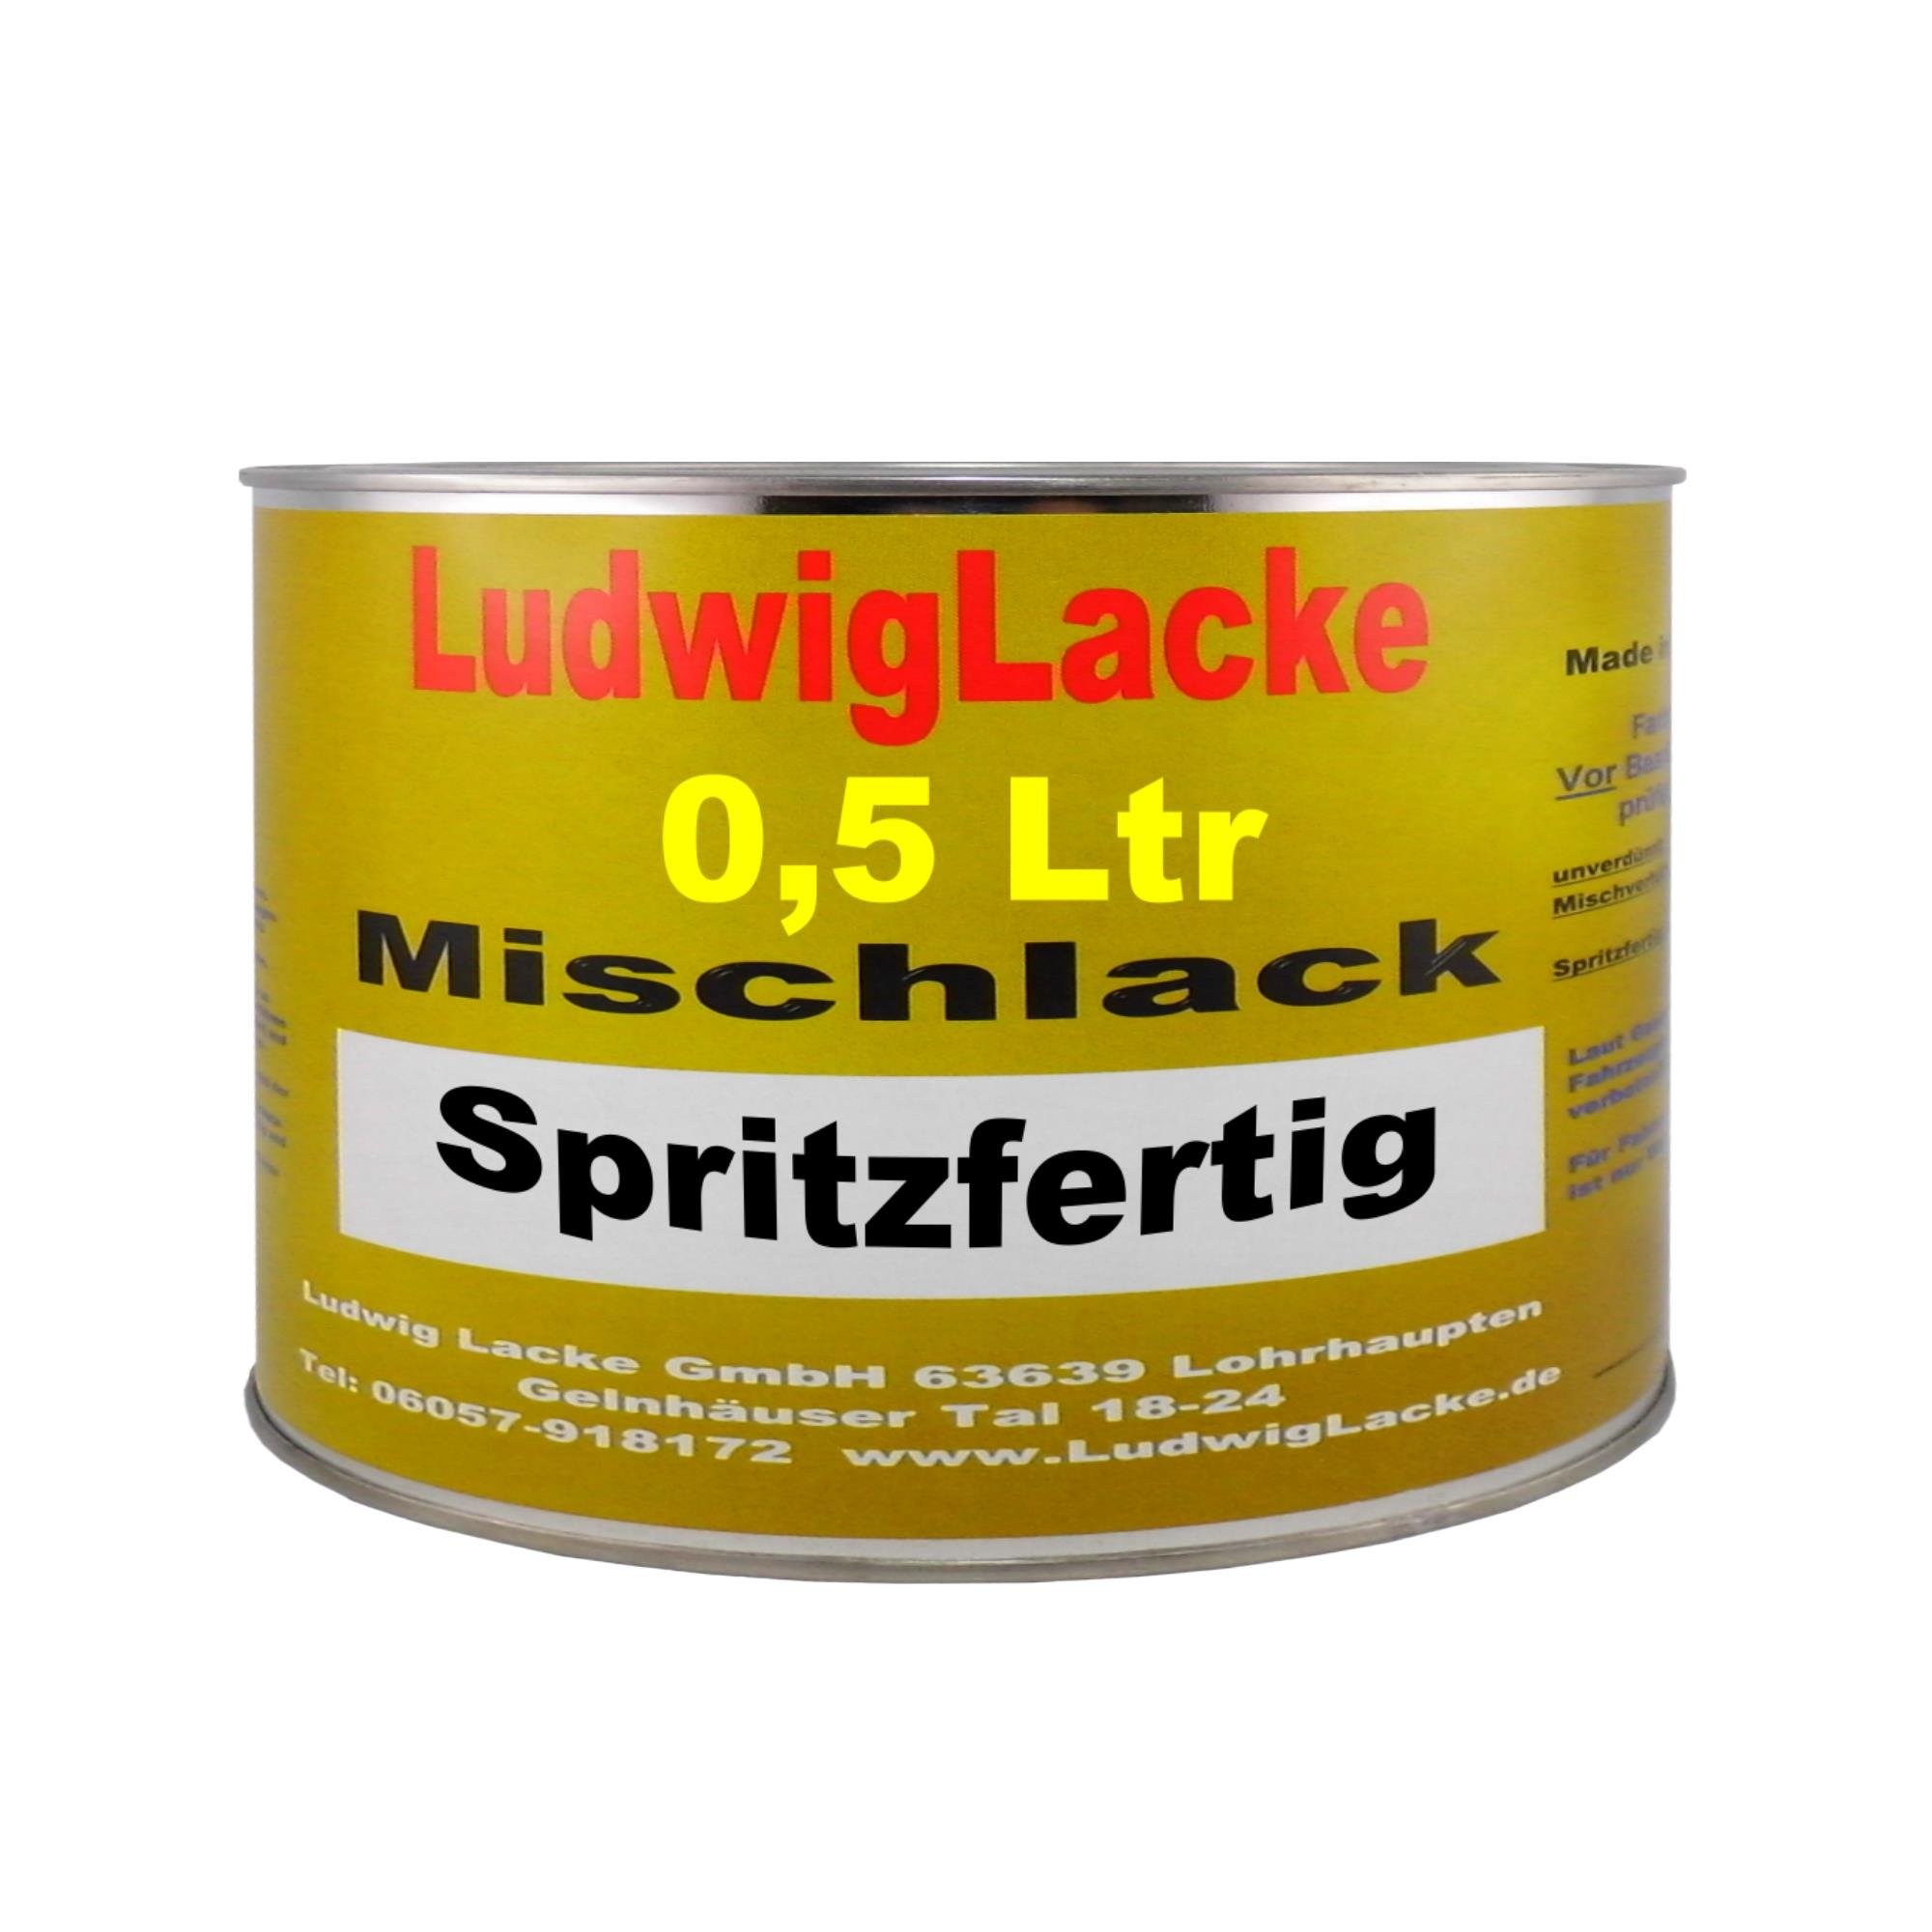 Ludwig Lacke 500ml spritzfertiger Autolack für Audi Ebonyschwarz Perleffekt LZ9W Bj.98-06